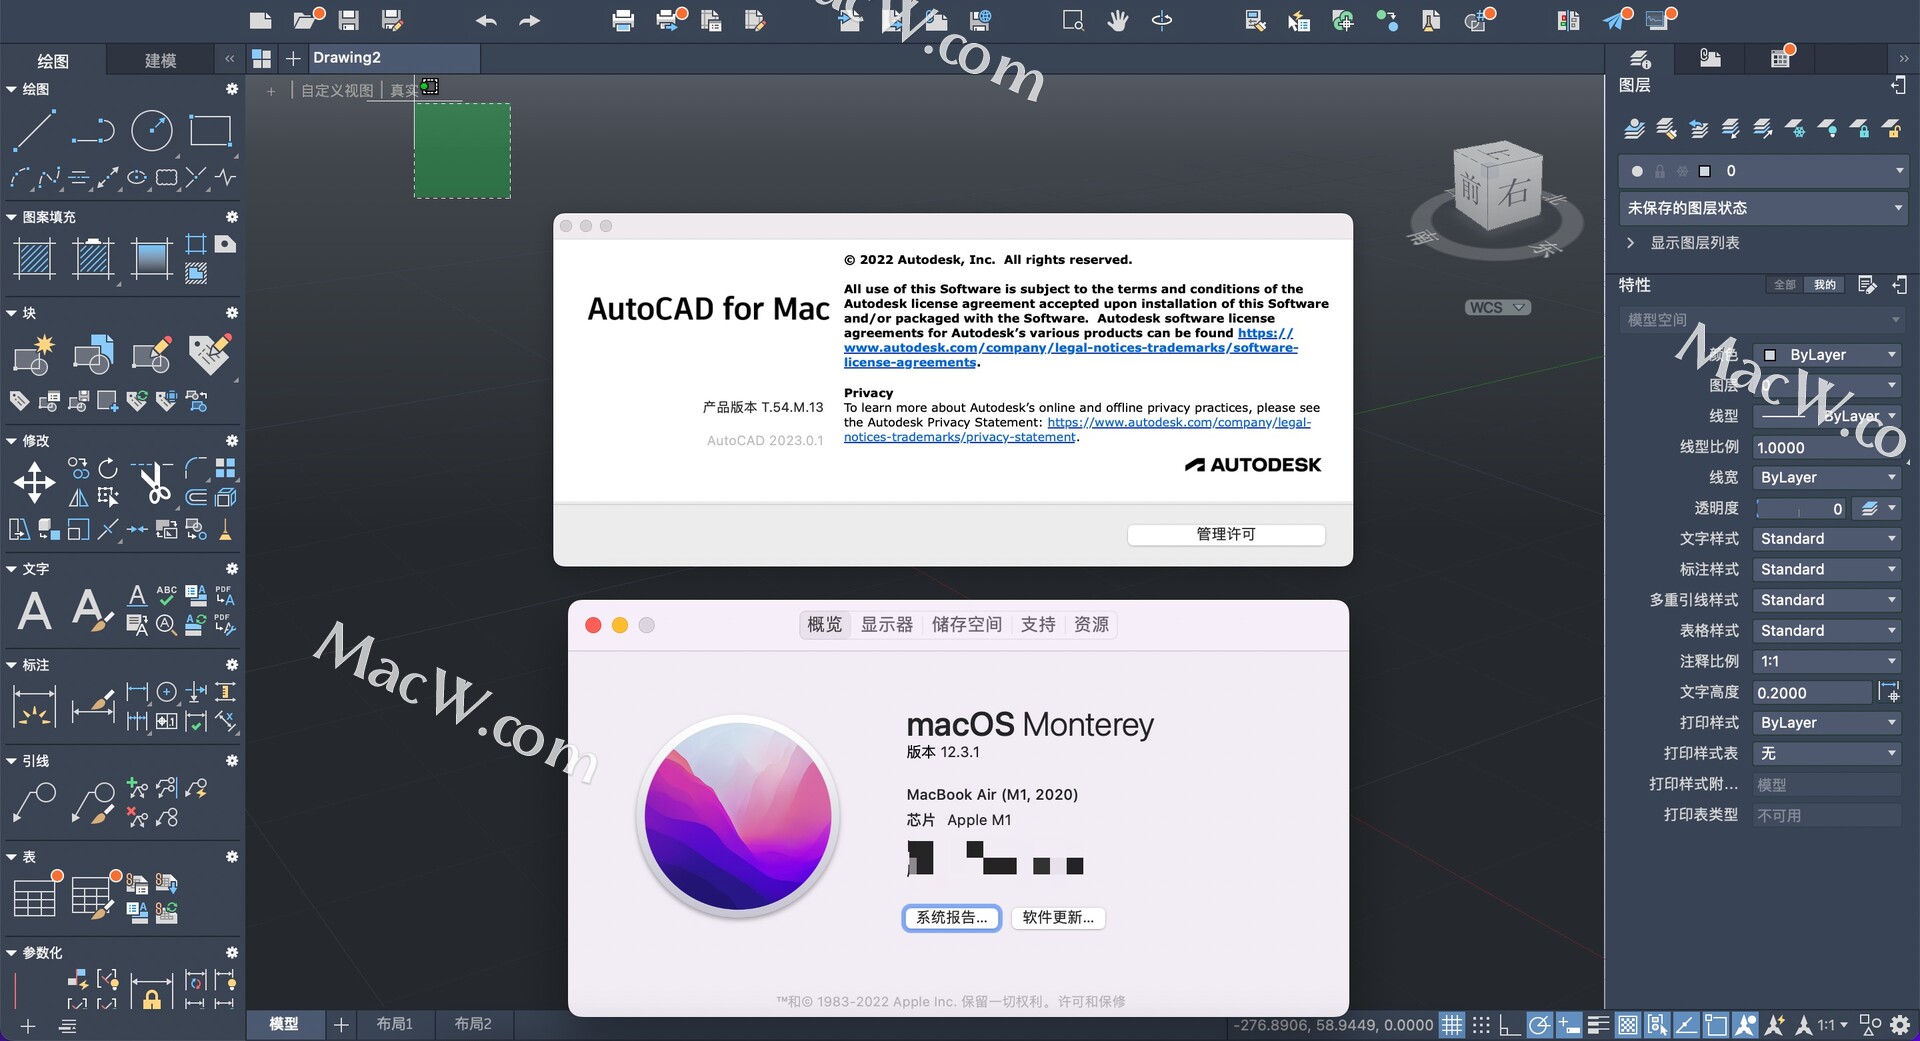 wireshark download mac m1